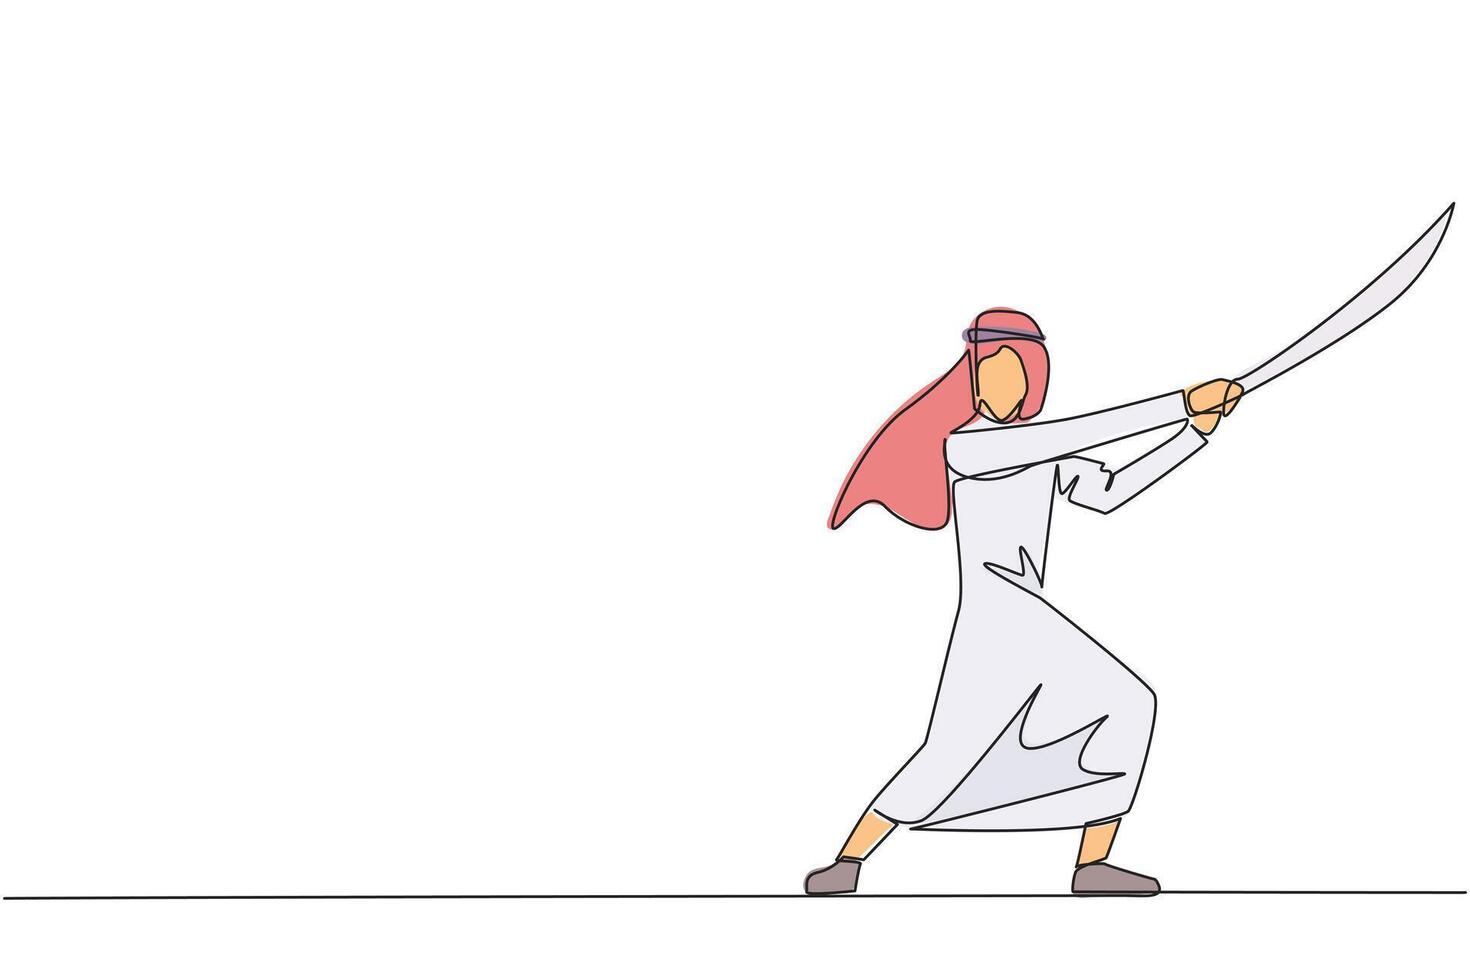 Single kontinuierlich Linie Zeichnung arabisch Geschäftsmann halten Samurai. stilisiert mögen Samurai Athlet Bewachung das Geschäft. bereit zu beseitigen stören Geschäft Wachstum. einer Linie Design Illustration vektor